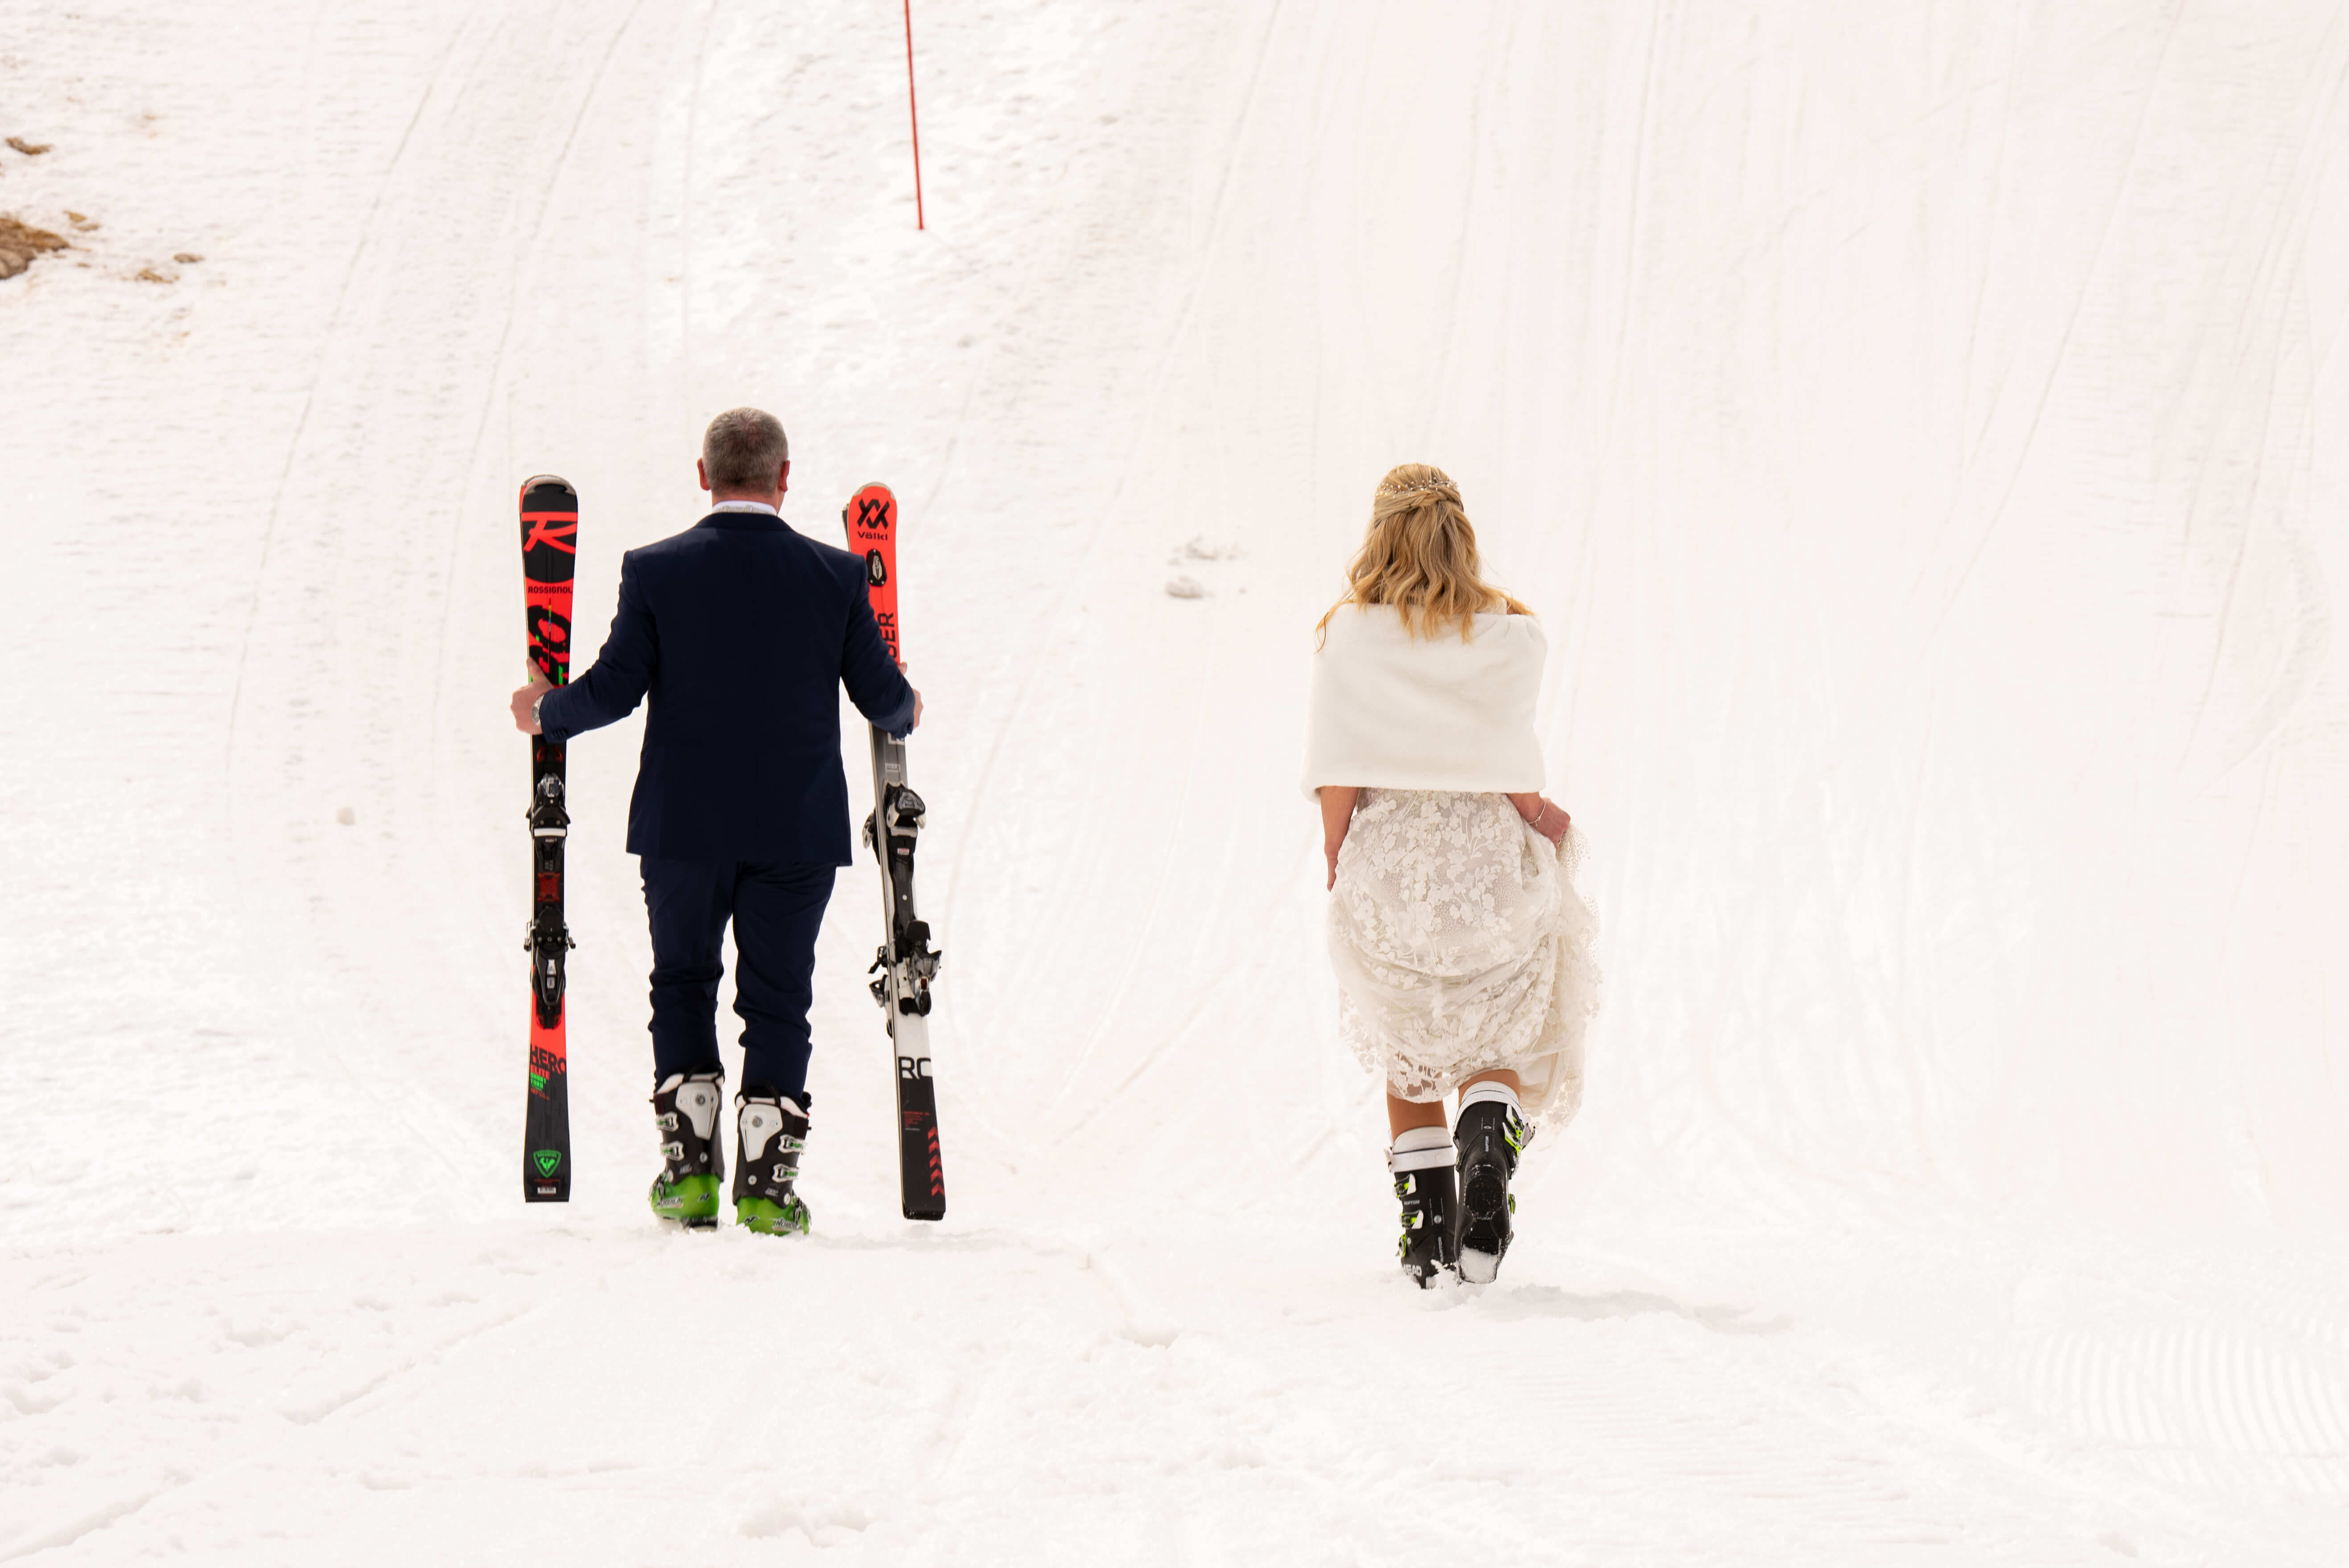 Sposi che se ne vanno con gli sci in mano